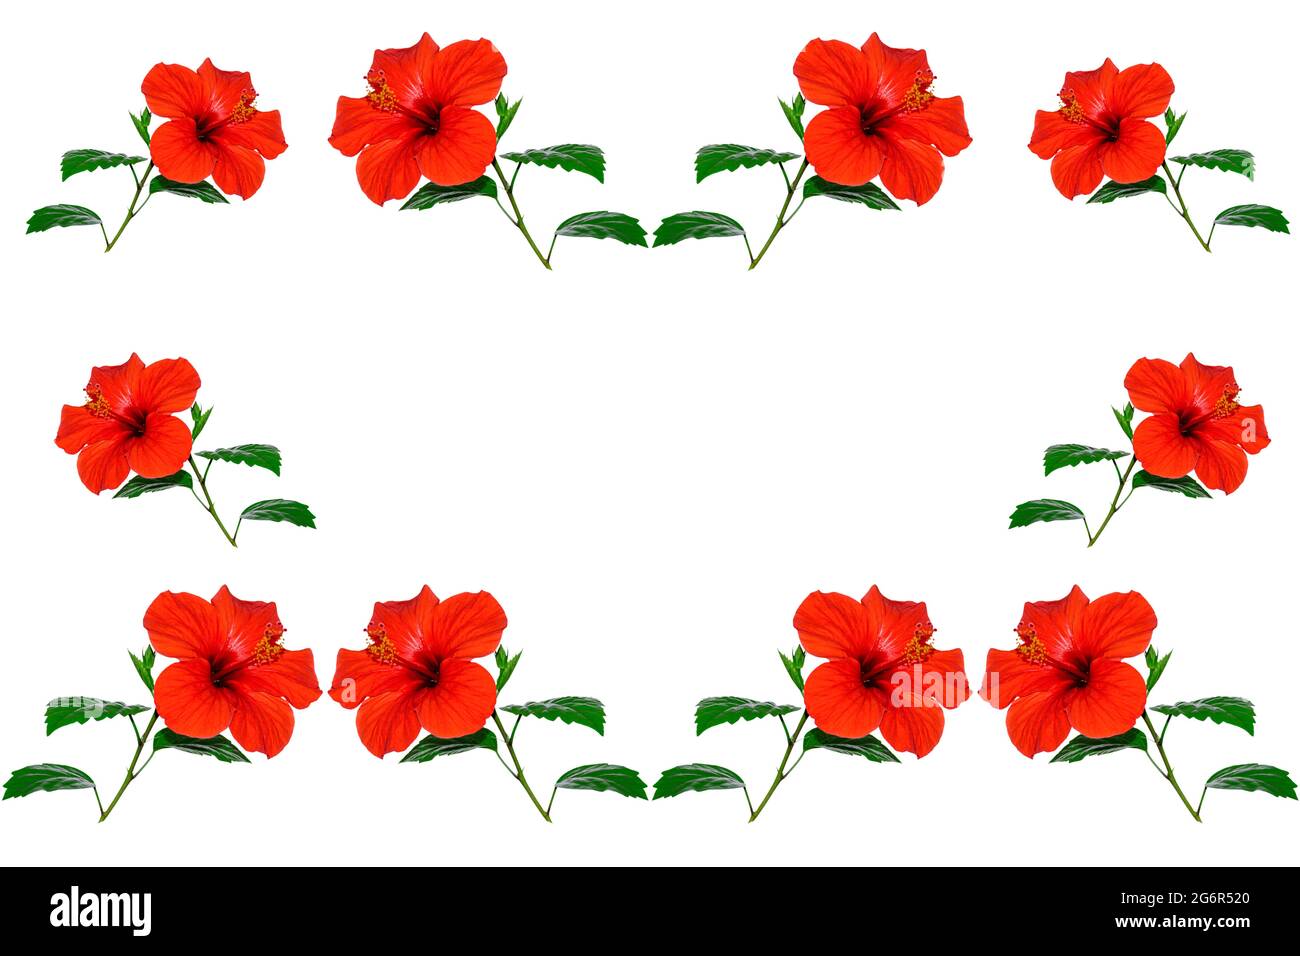 motif naturel fleurs d'hibiscus sur fond blanc Banque D'Images